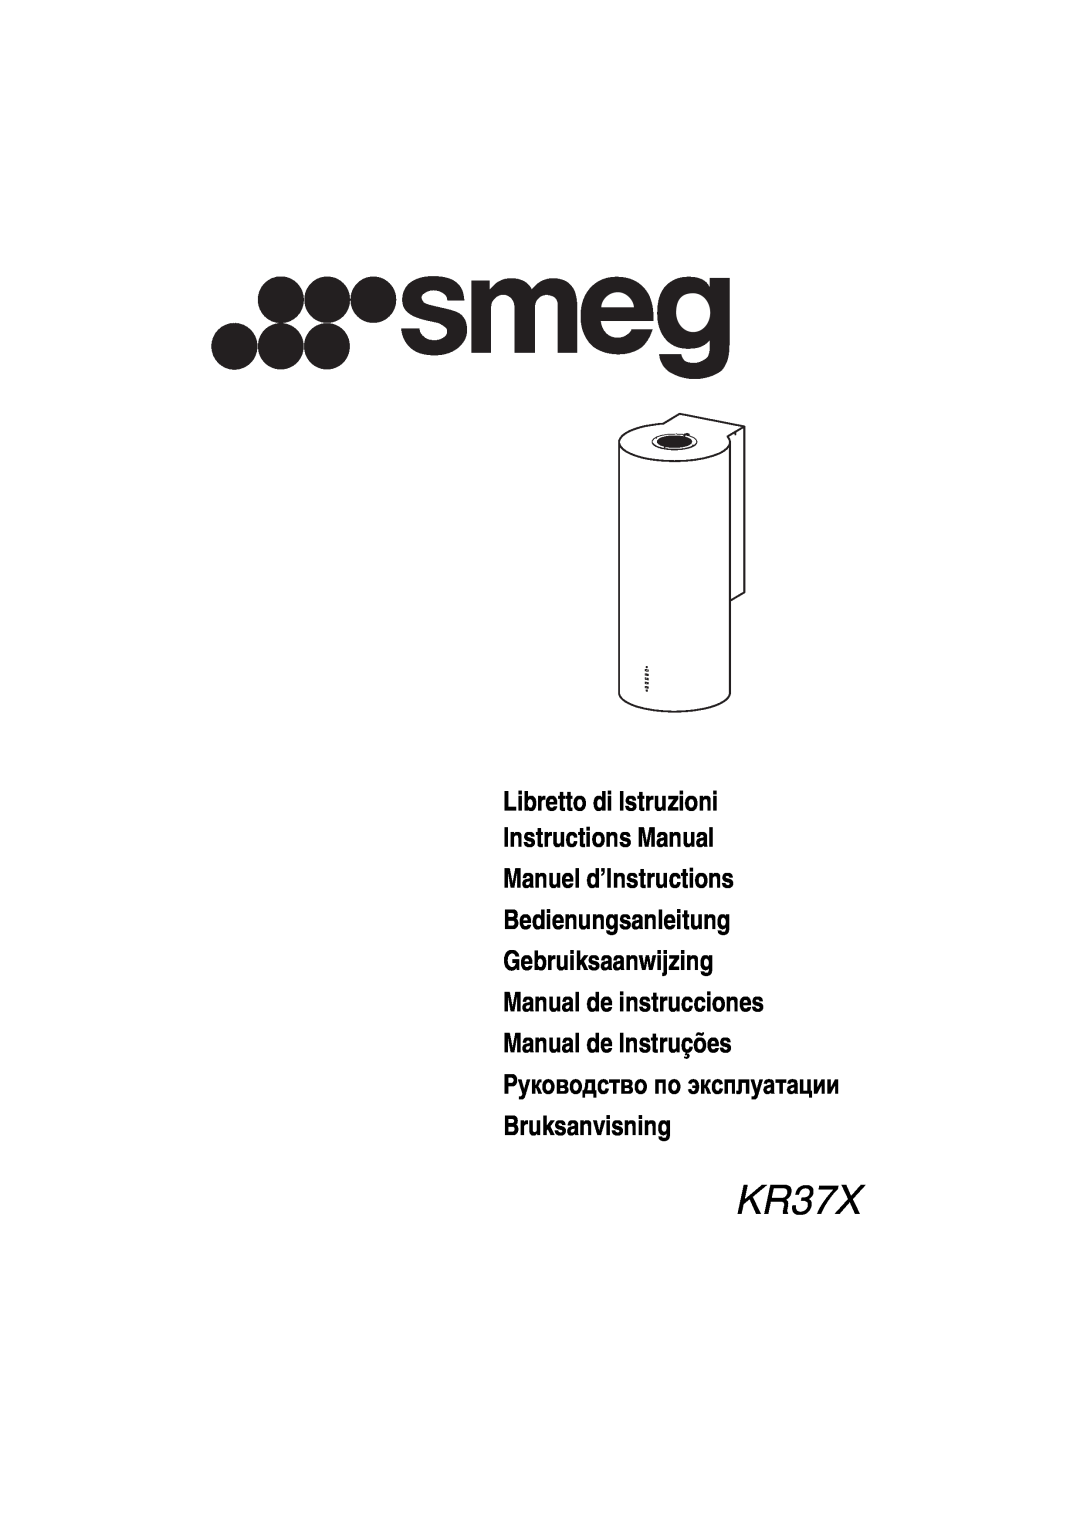 Smeg KR37X manual Libretto di Istruzioni Instructions Manual Manuel d’Instructions, Manual de Instruções, Bruksanvisning 